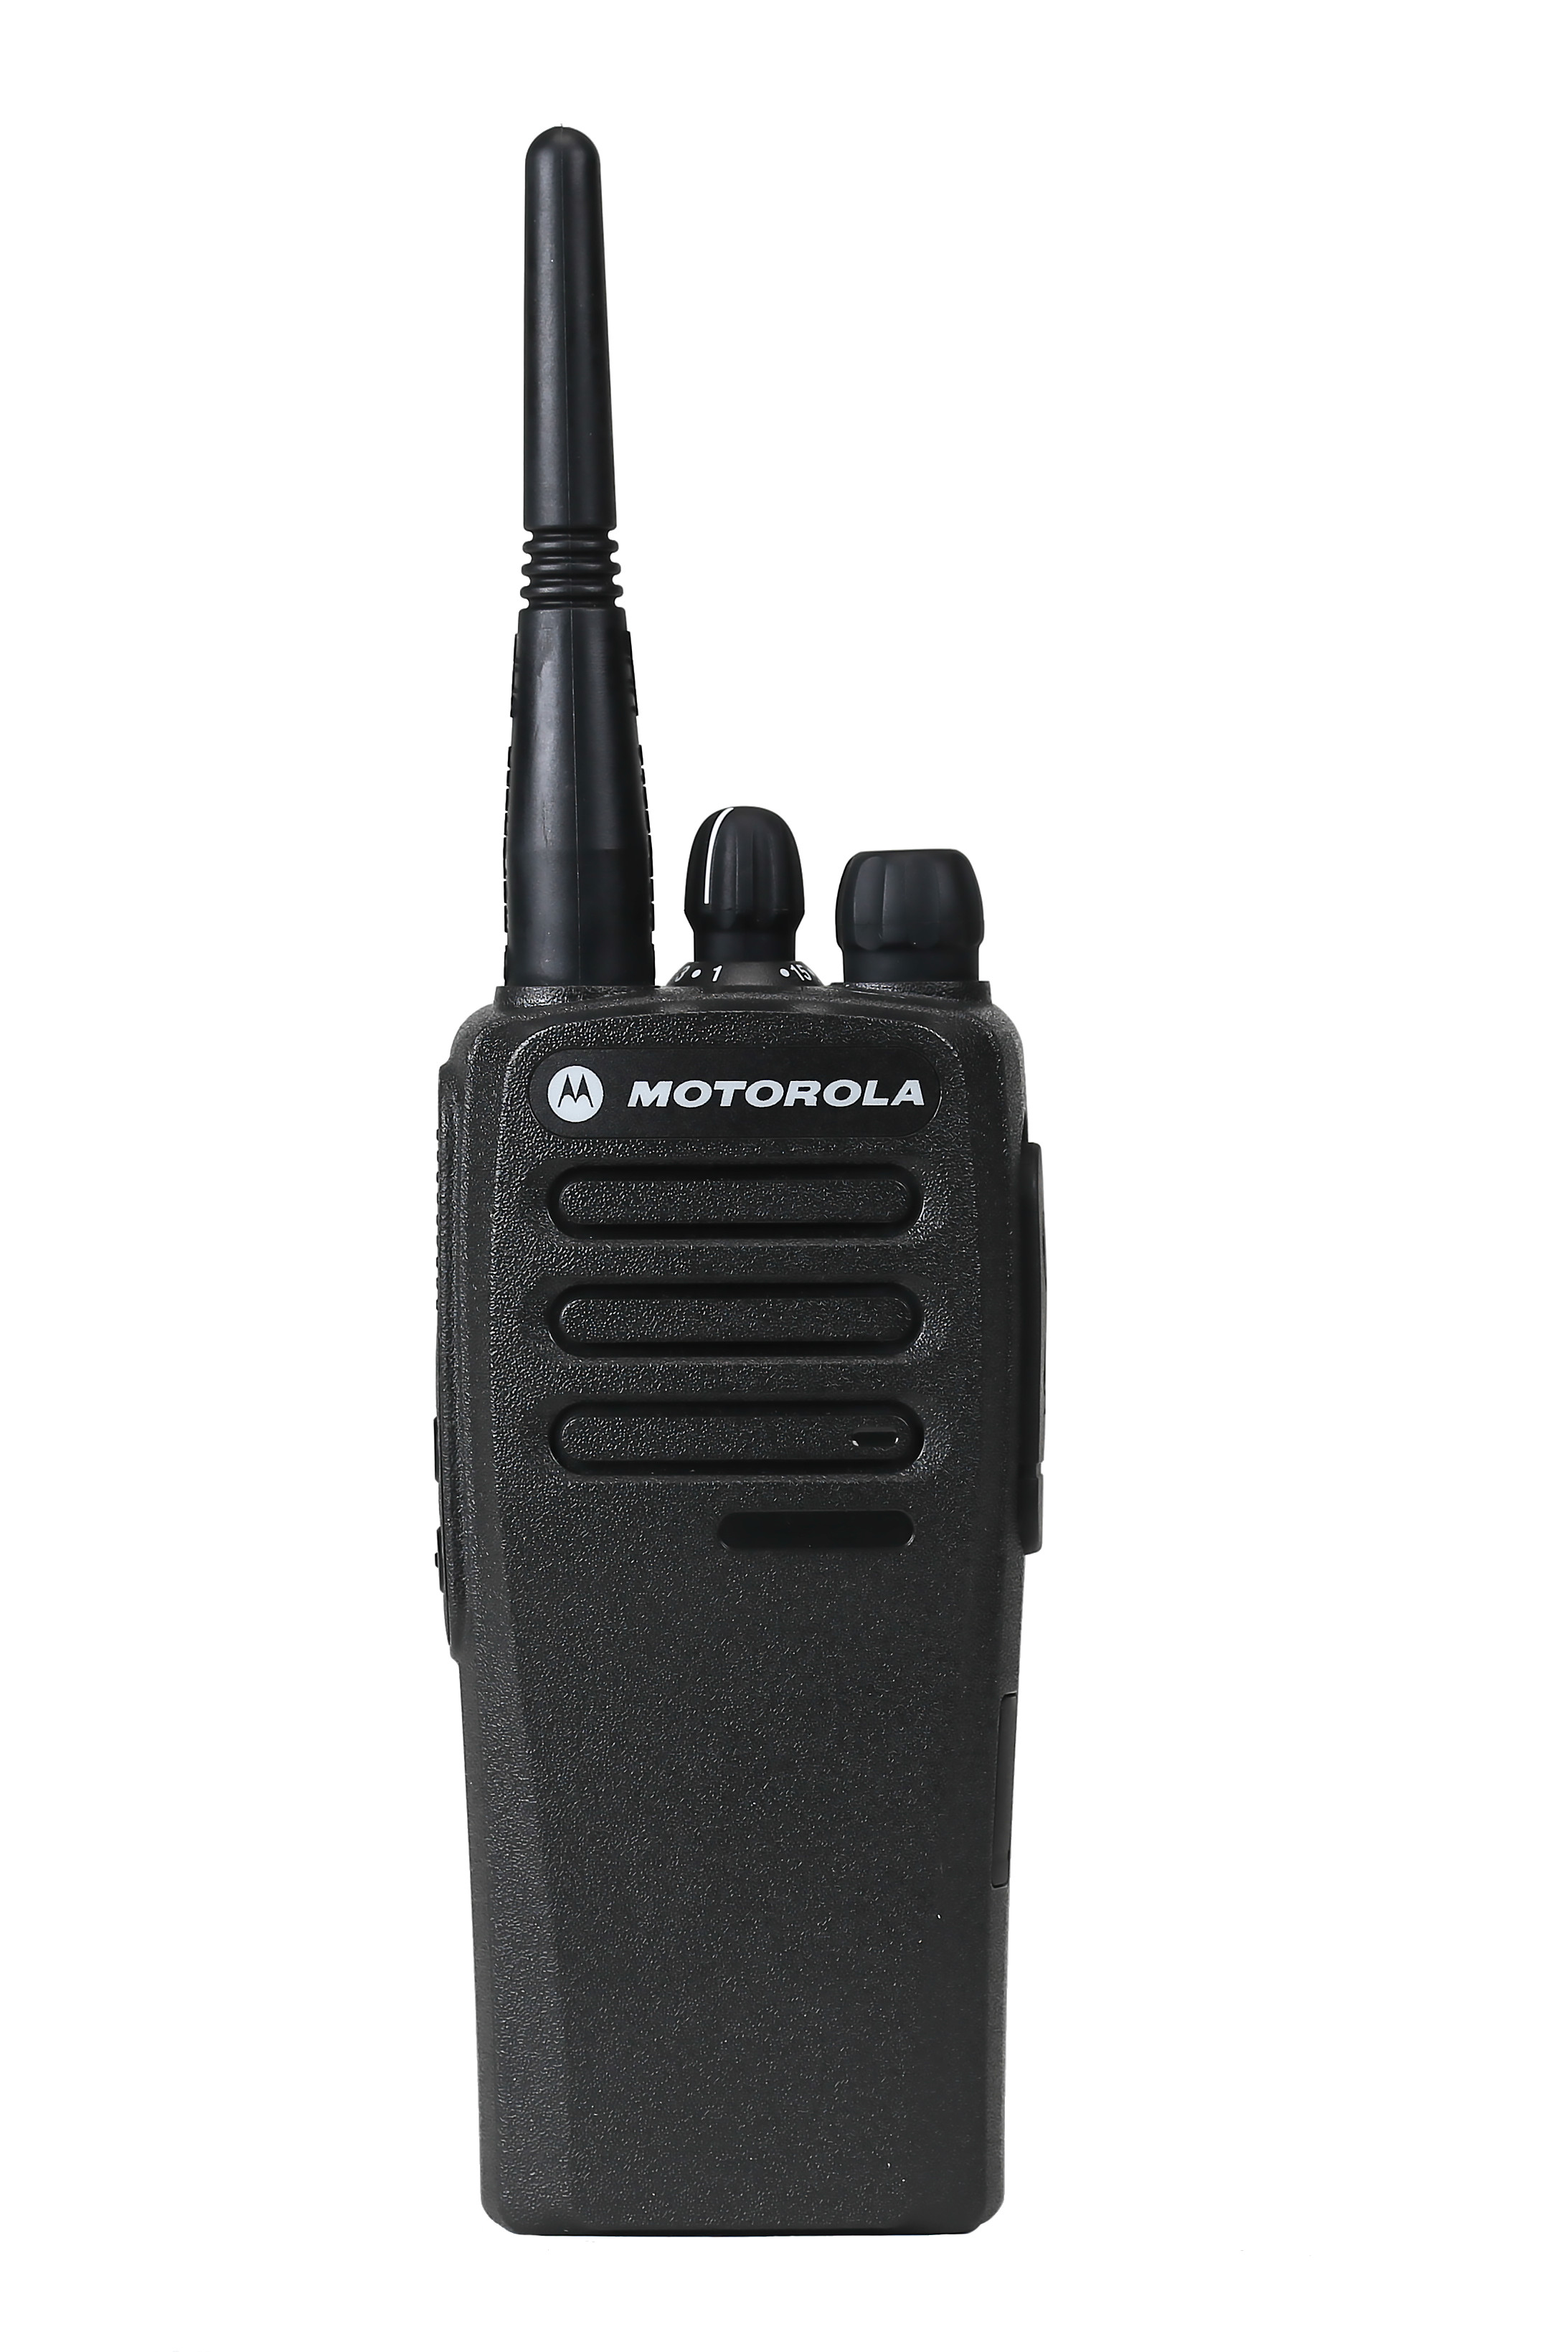 SET - Radiostanice MOTOTRBO DP1400 + VHF anténa + Li-Ion baterie 1600 mAh + rychlonabíječ